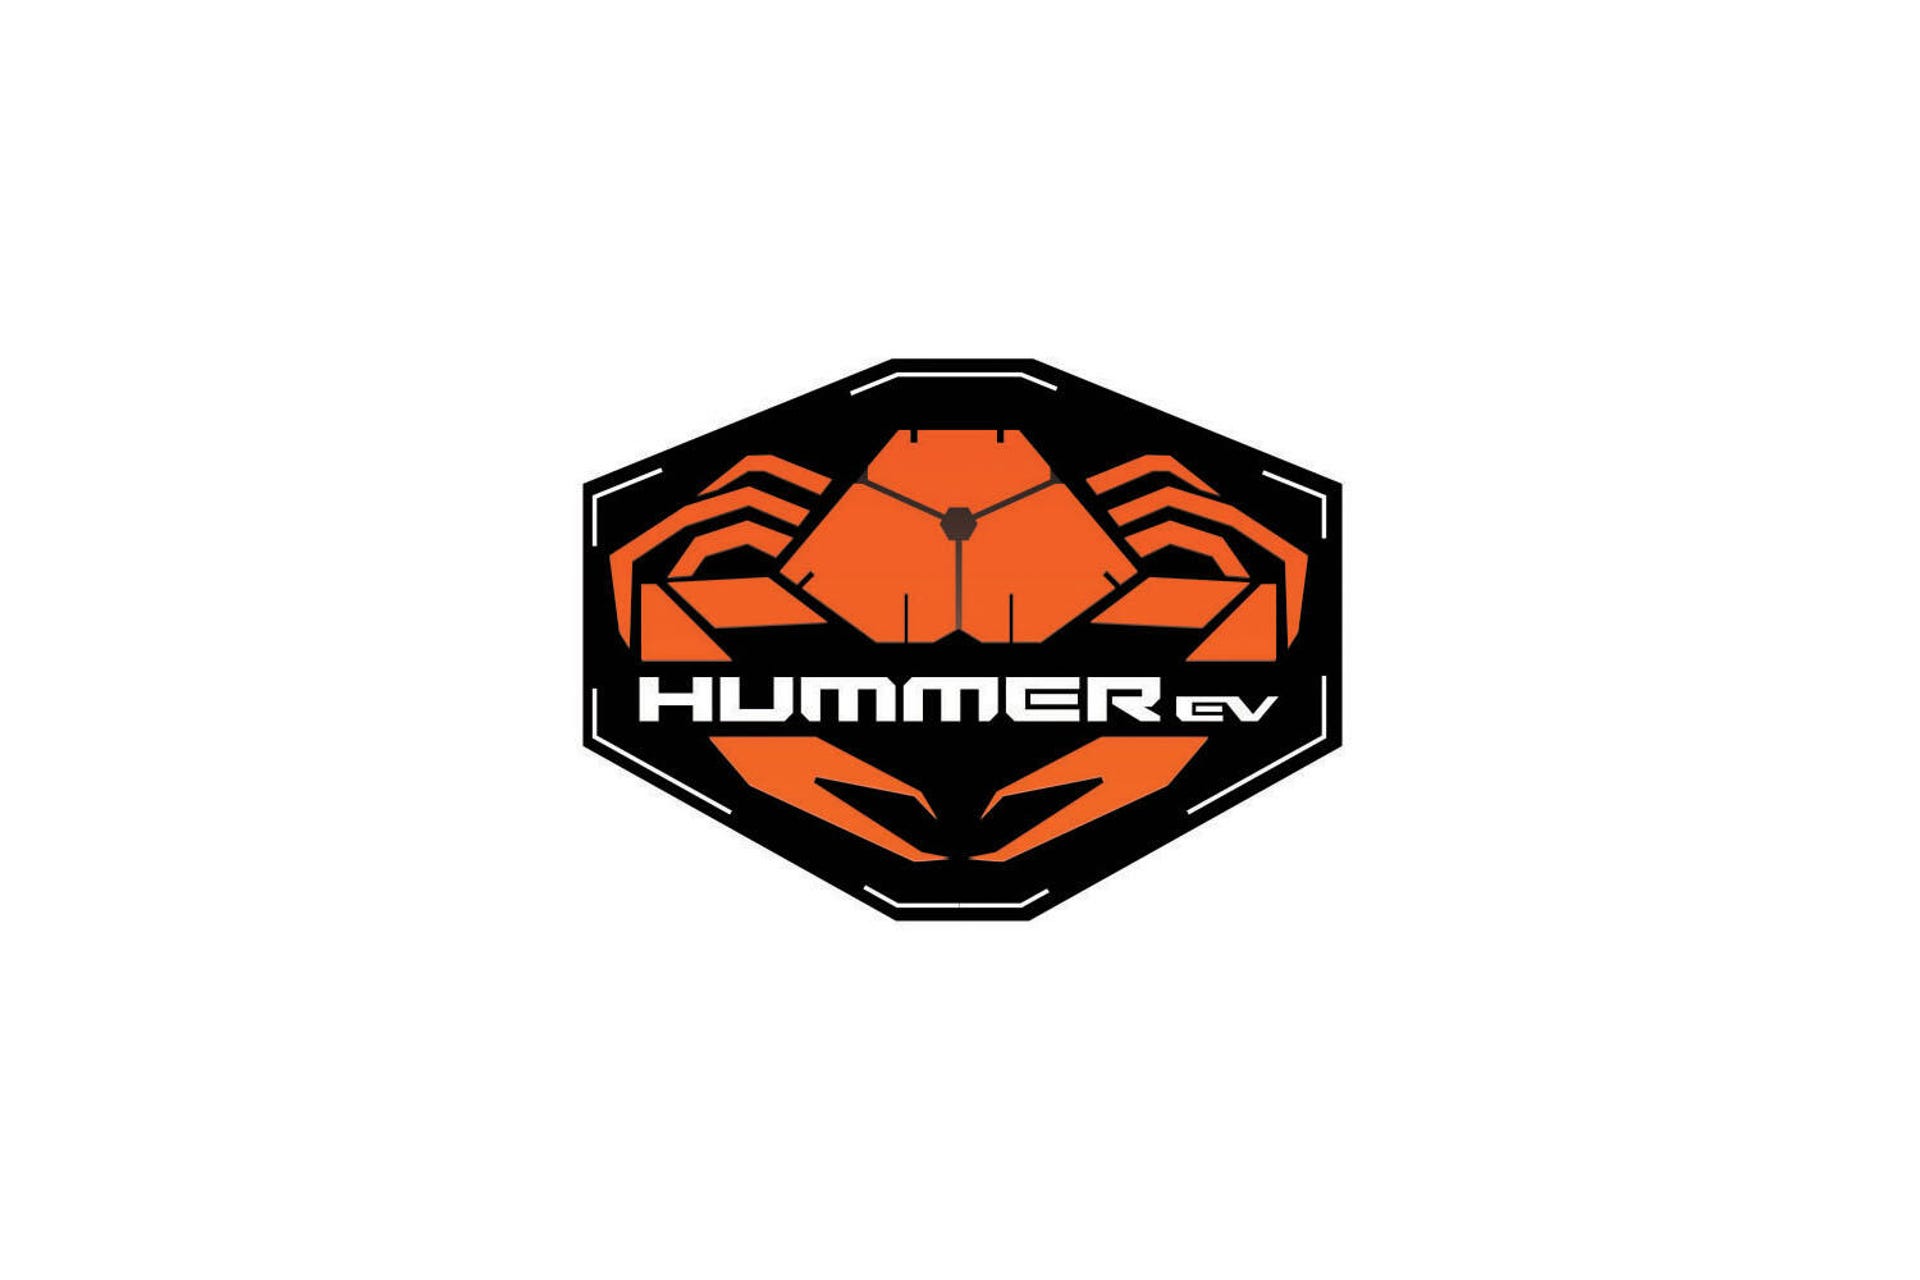 Hummer EV Crab Mode badge